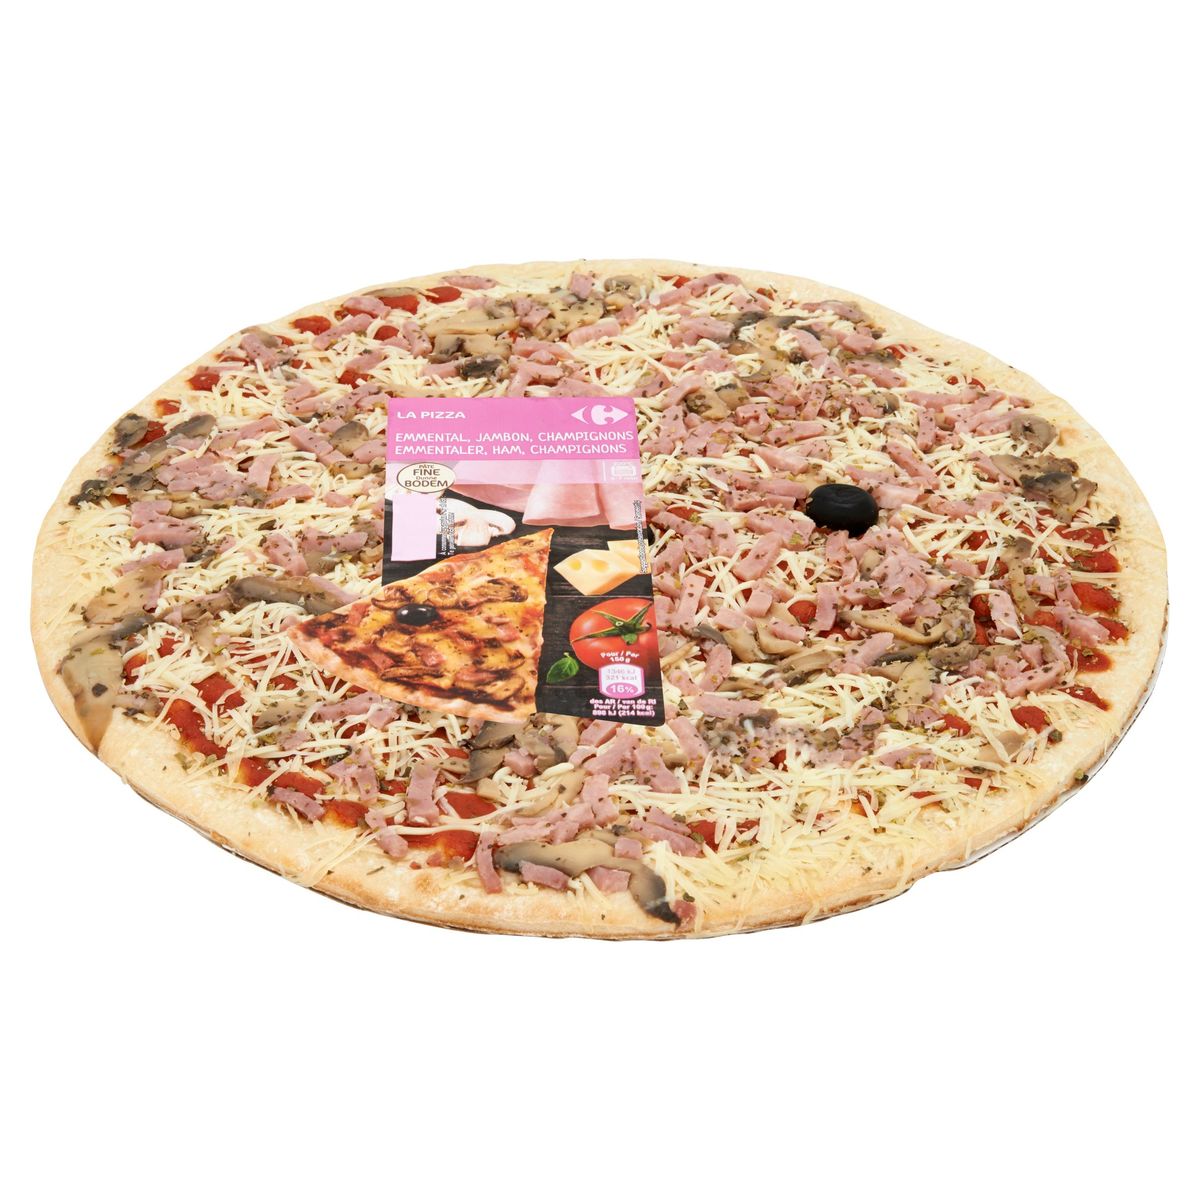 Carrefour La Pizza Emmentaler, Ham, Champignons 450 g